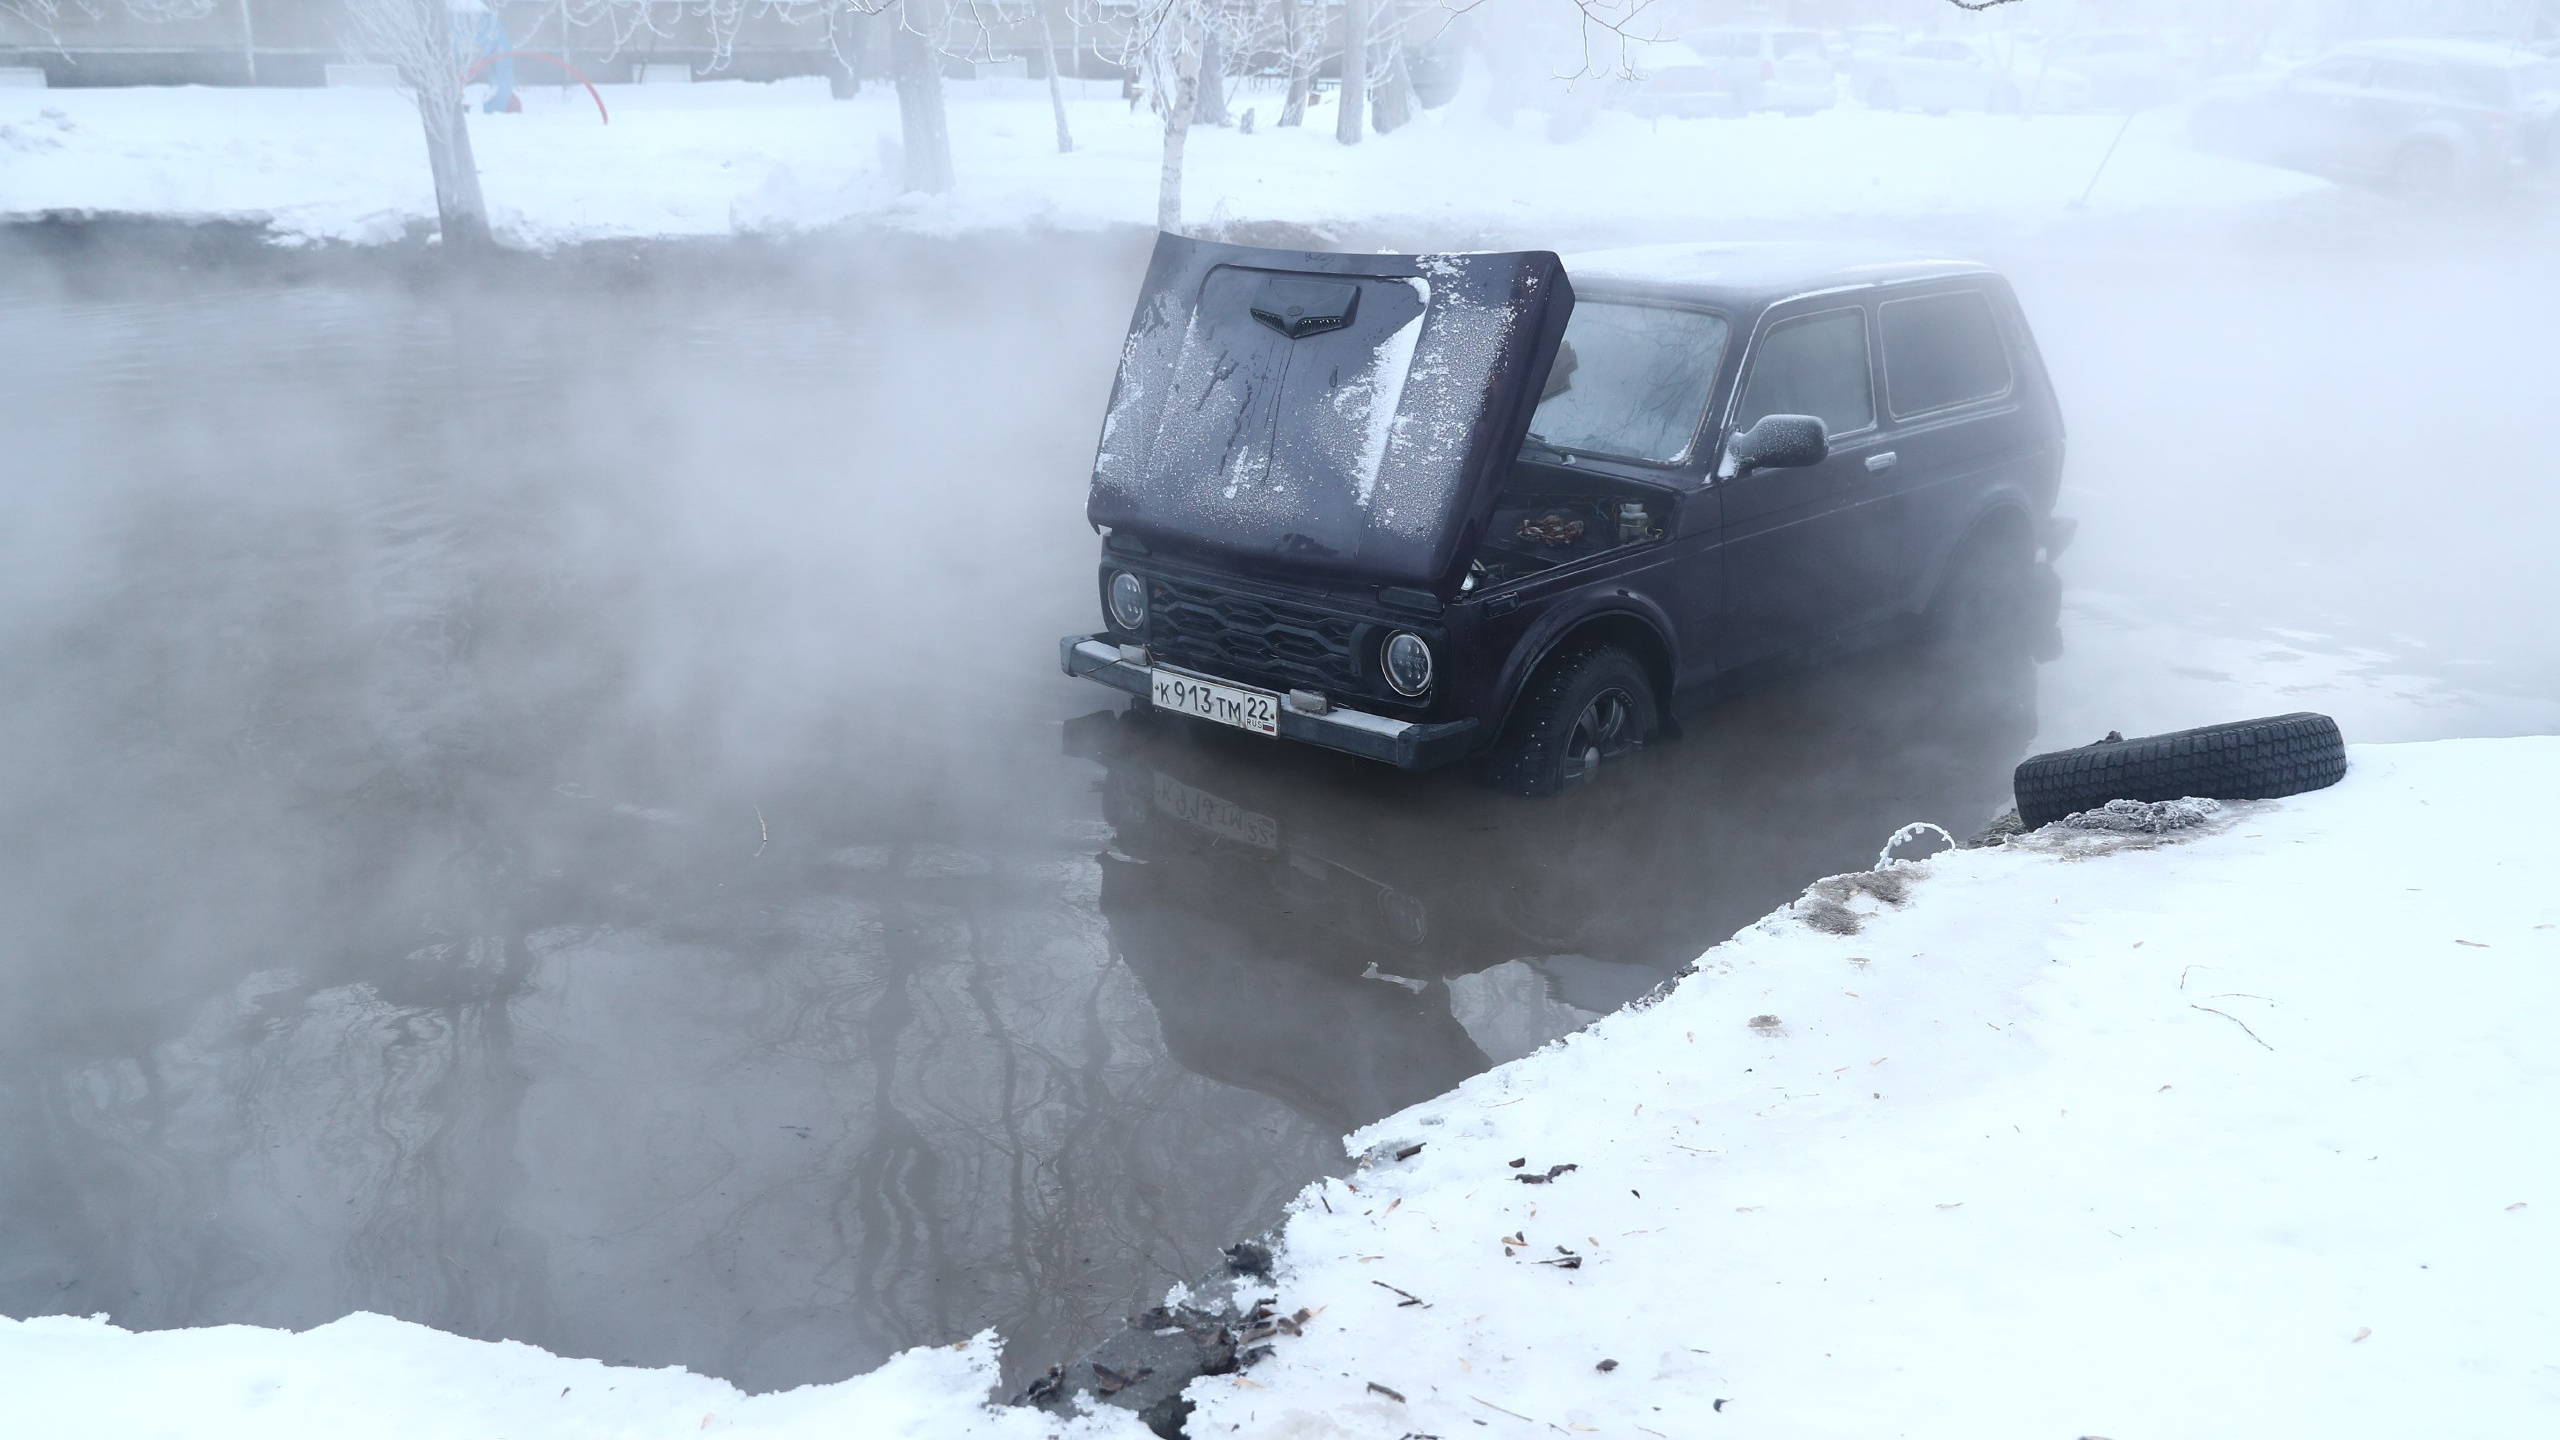 Уголовное дело, штрафы, компенсации — какие последствия ждут ответственных за крупную аварию в Новосибирске